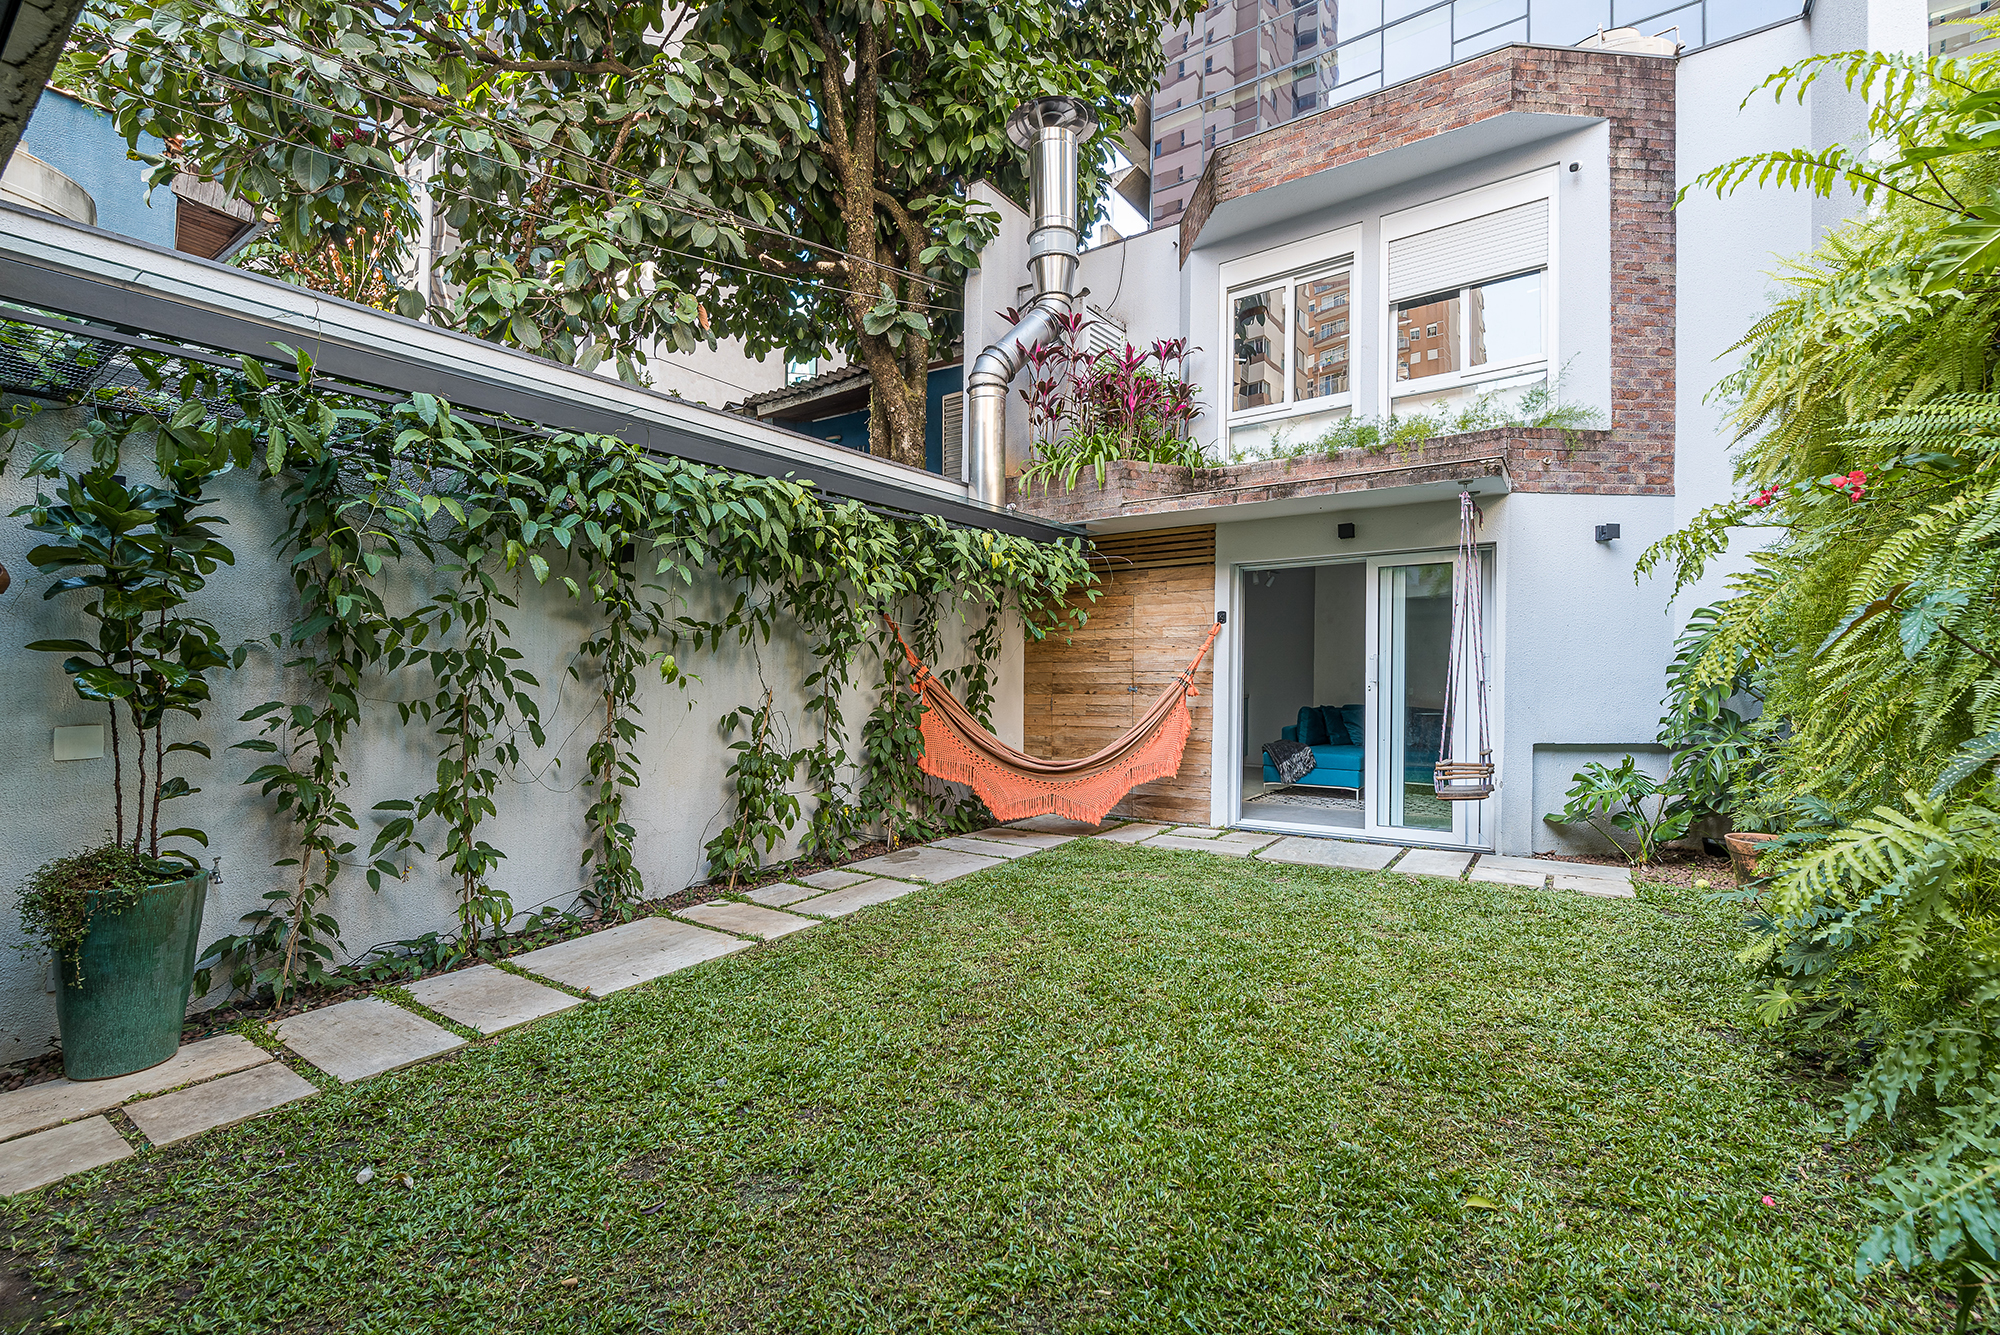 Em São Paulo, casa de vila vira óasis particular com jardim exuberante. Projeto de Marcela Fazio. Na foto, quintal, edicula, rede e jardim vertical.